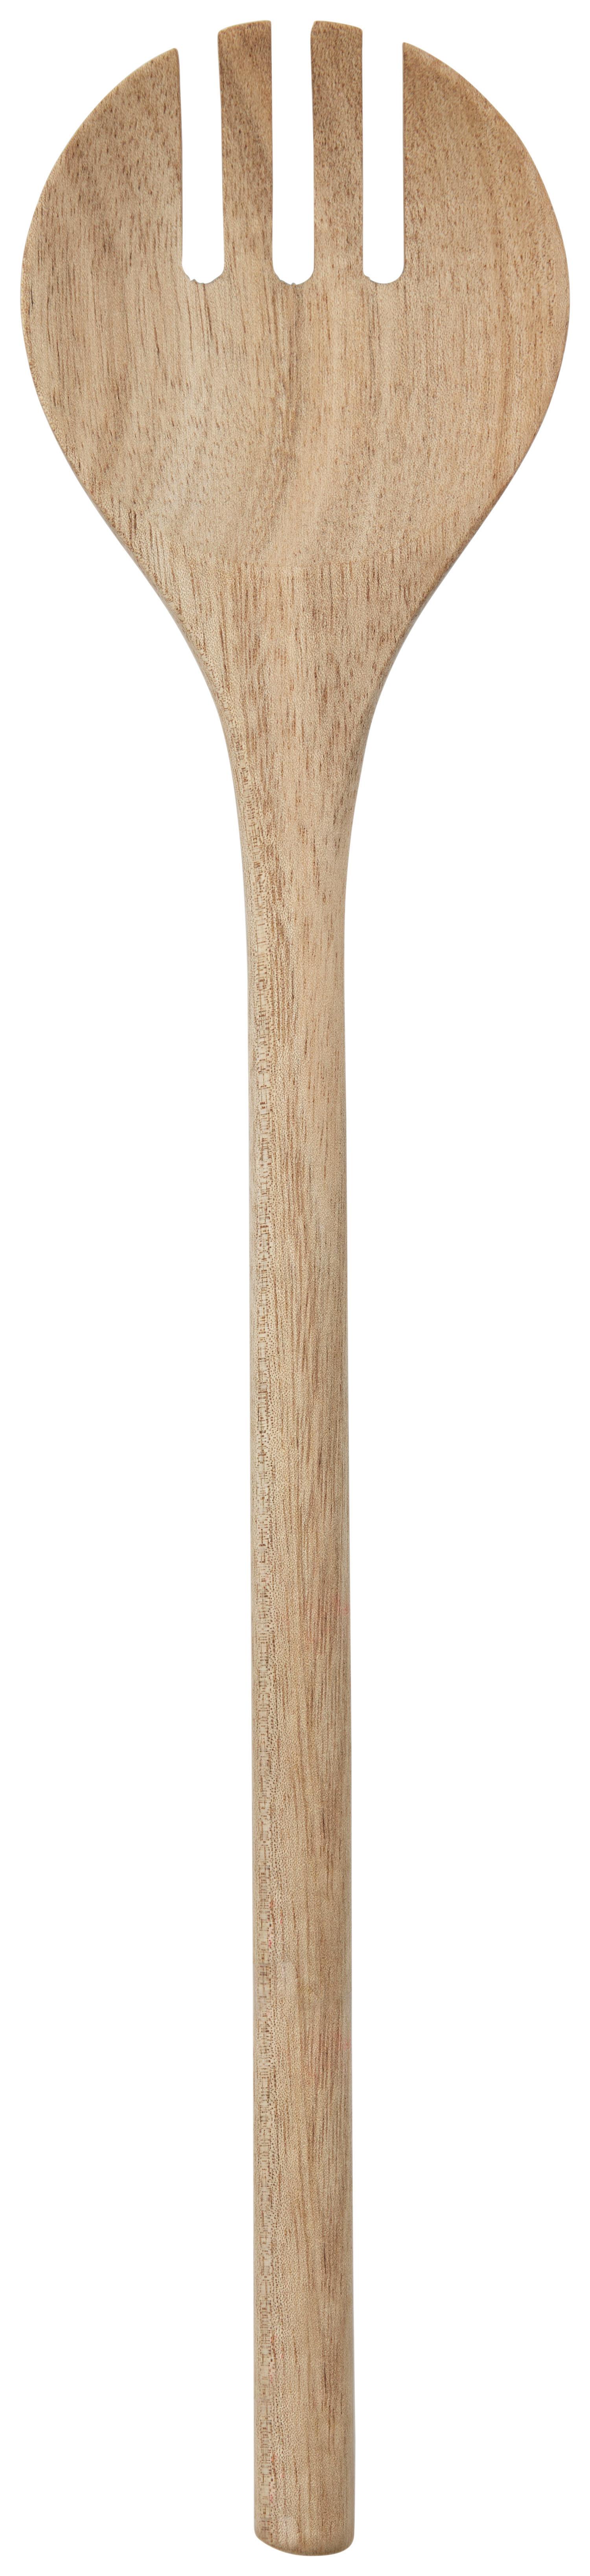 Vařečka North Breeze - barvy akácie, Konvenční, dřevo (30cm) - Zandiara